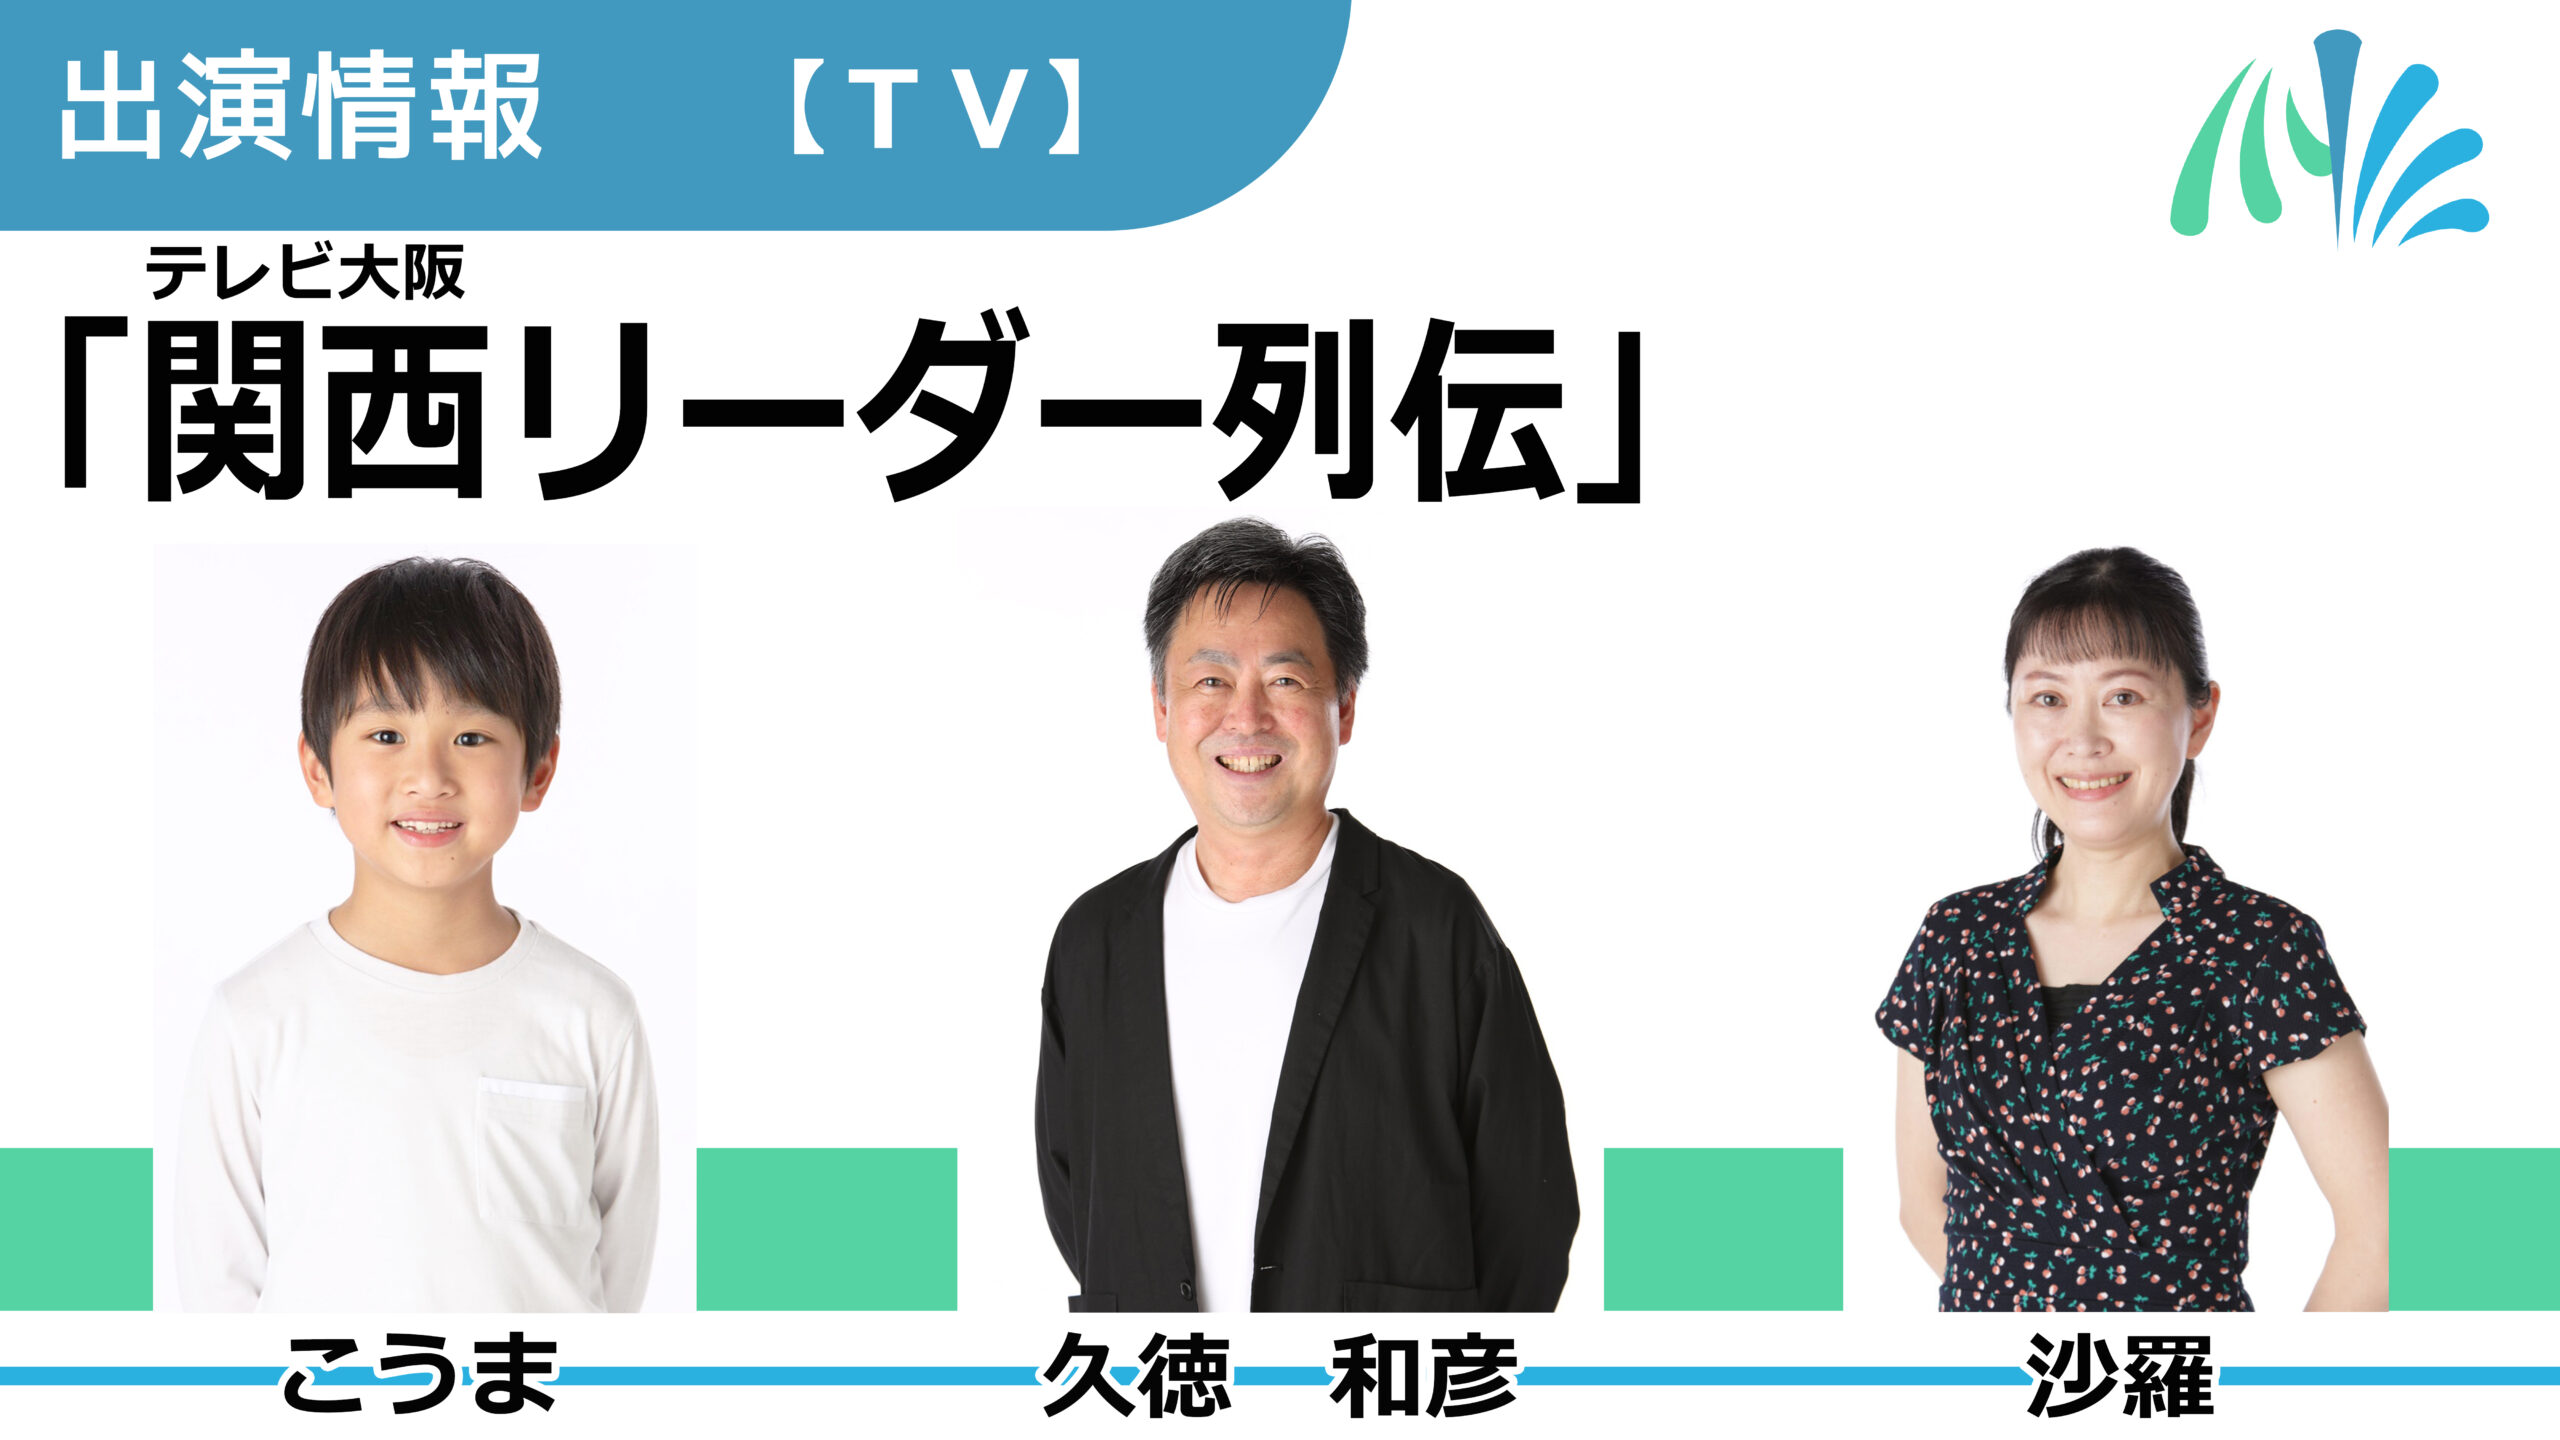 【出演情報】こうま、久徳和彦、沙羅 / テレビ大阪「関西リーダー列伝」出演